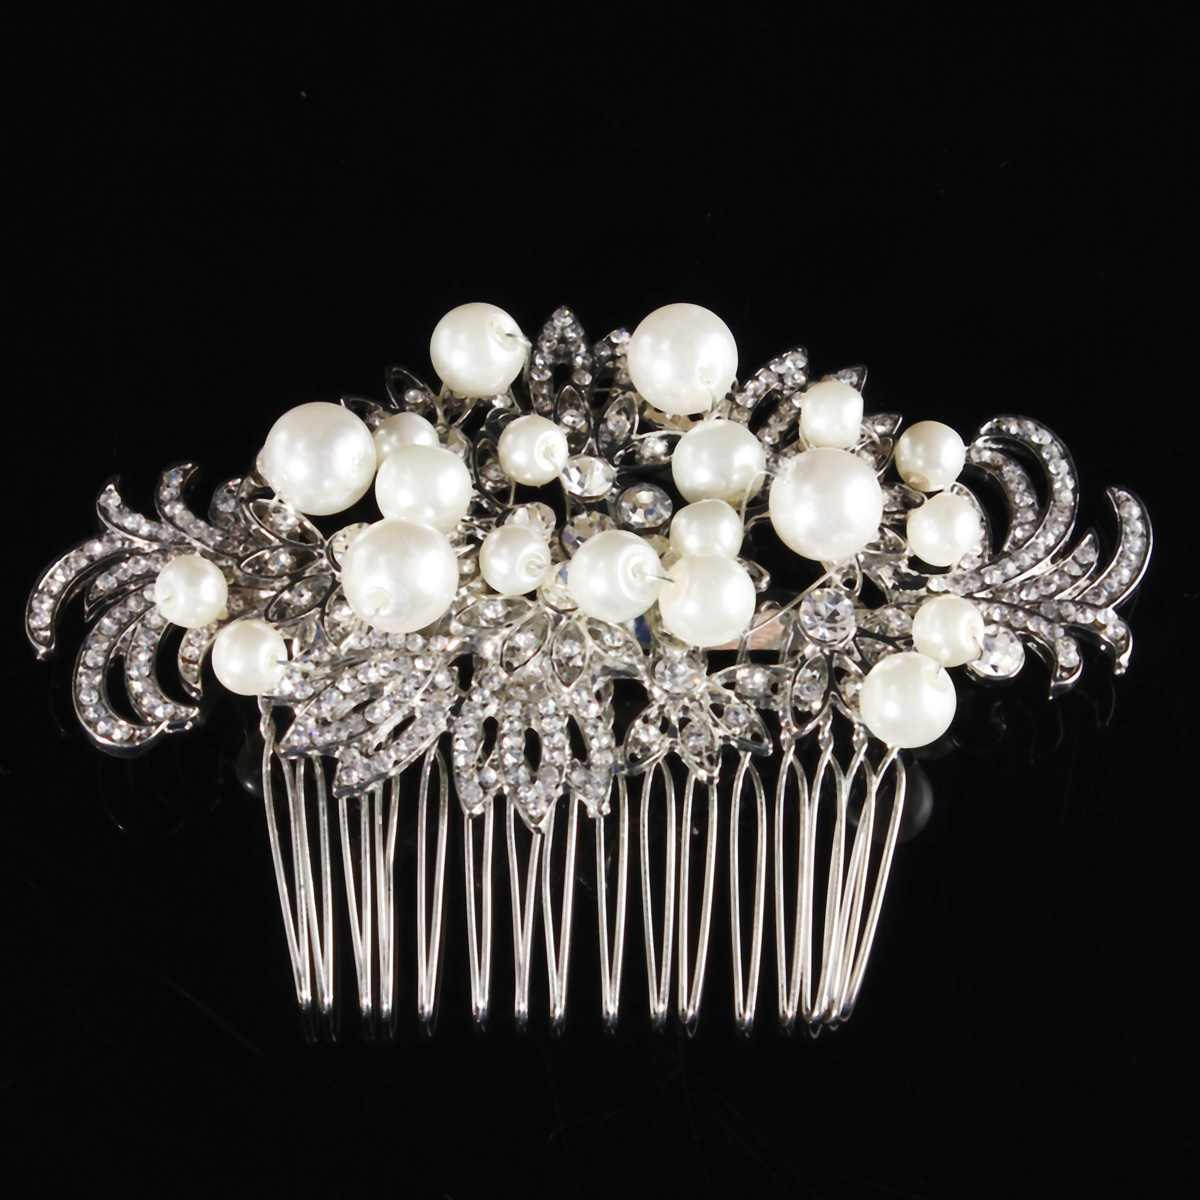 

Bridal Artificial Pearl Crystal Rhinestone Flowers Diamante Hair Clip Comb Bride Wedding Headpiece